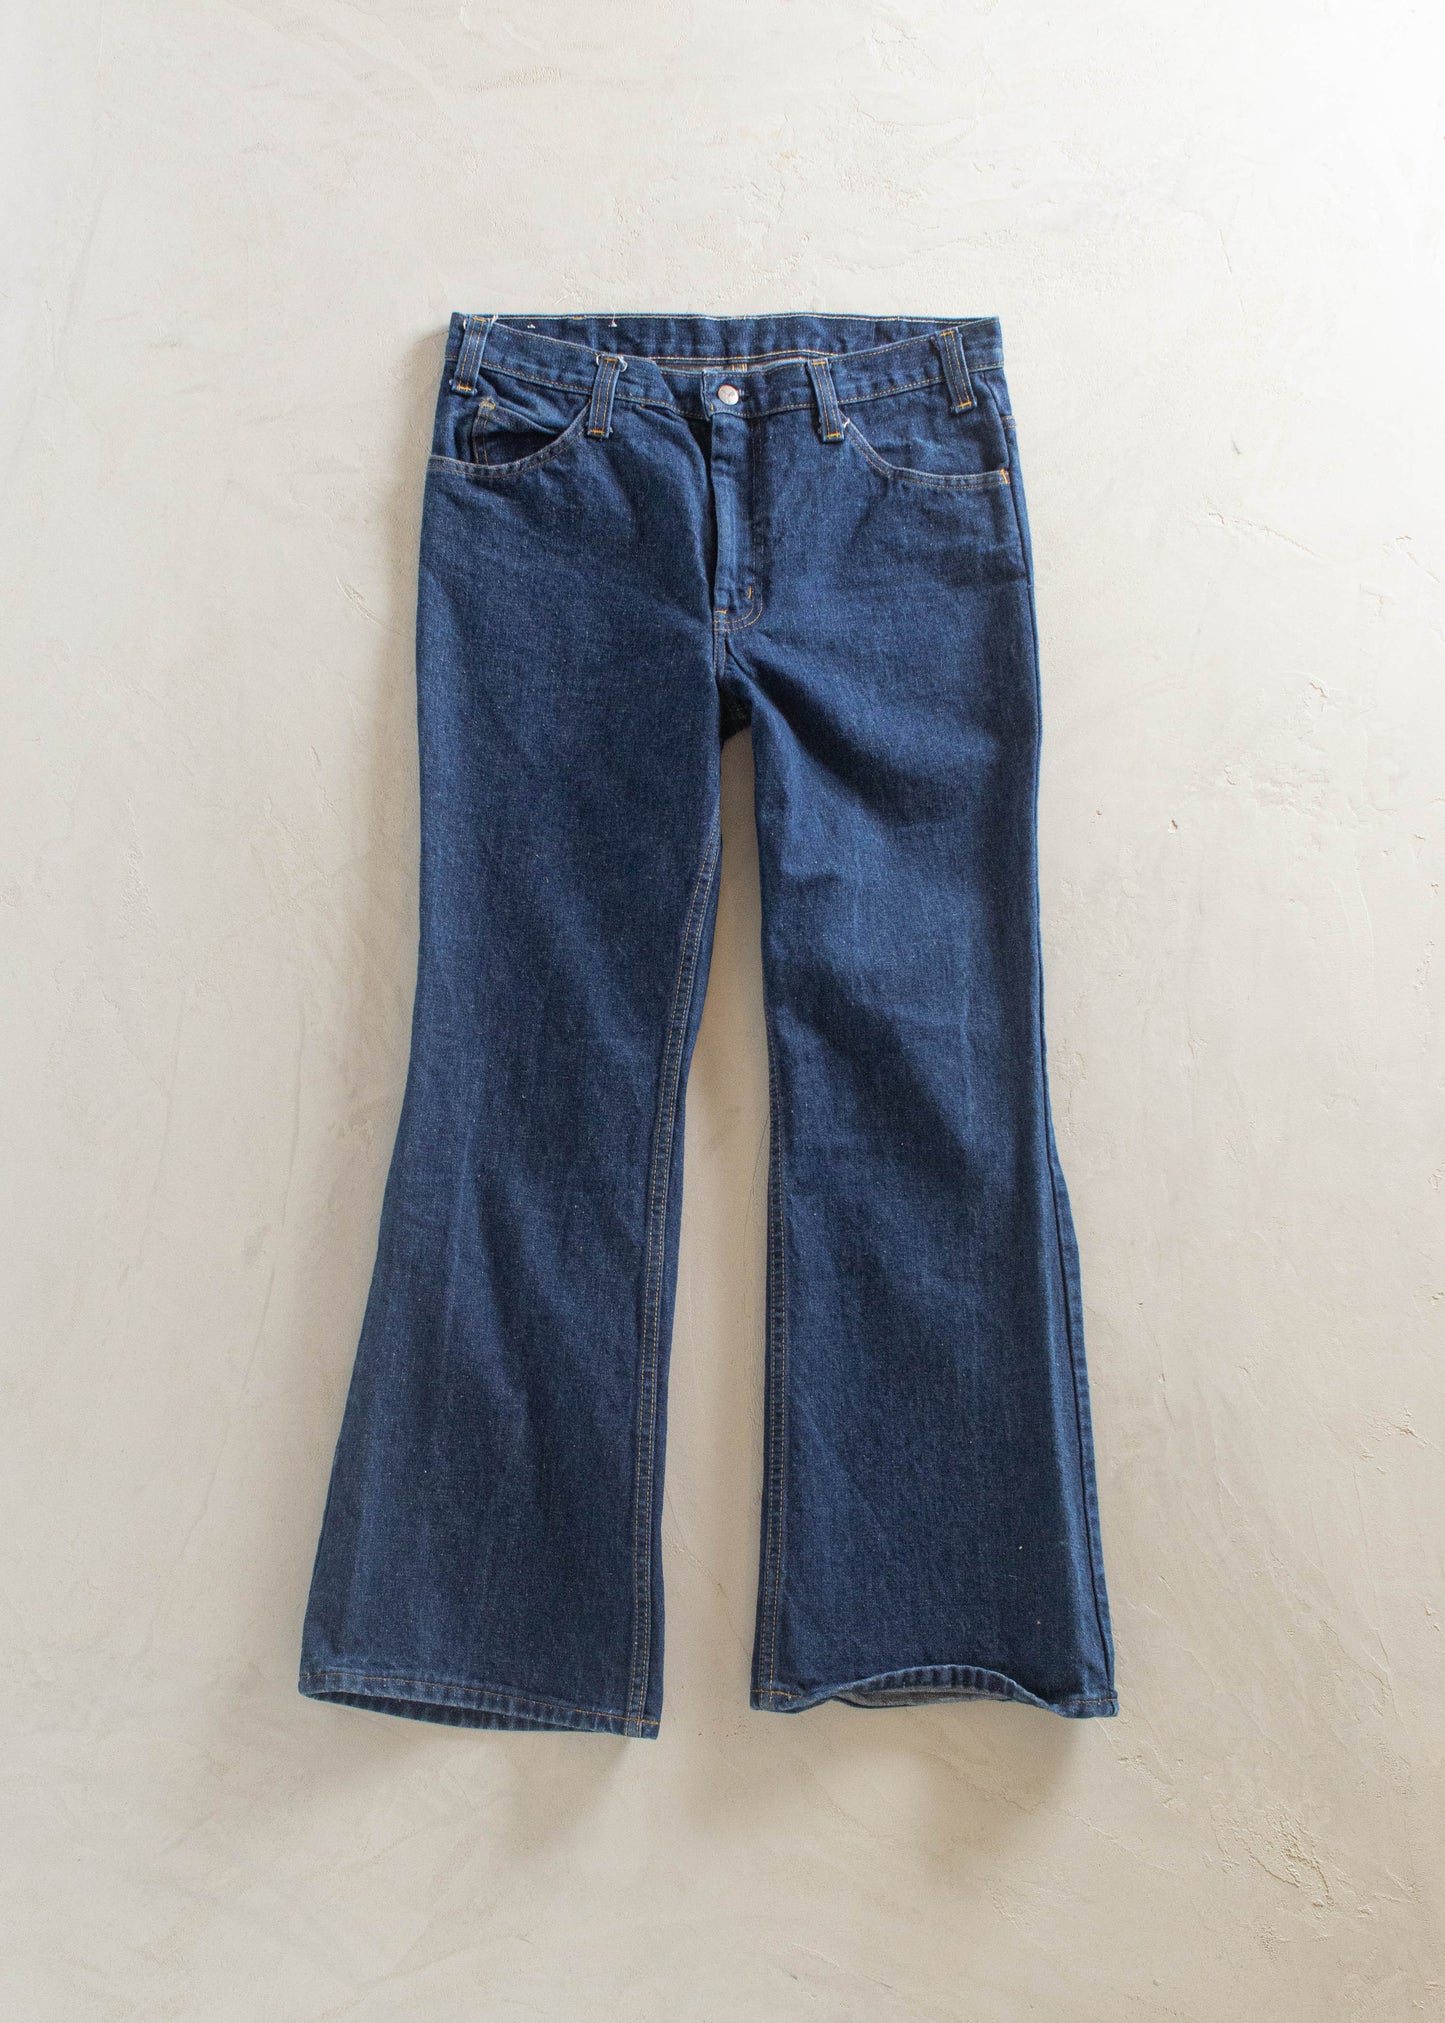 1970s GWG Darkwash Jeans Size Women's 29 Men's 32